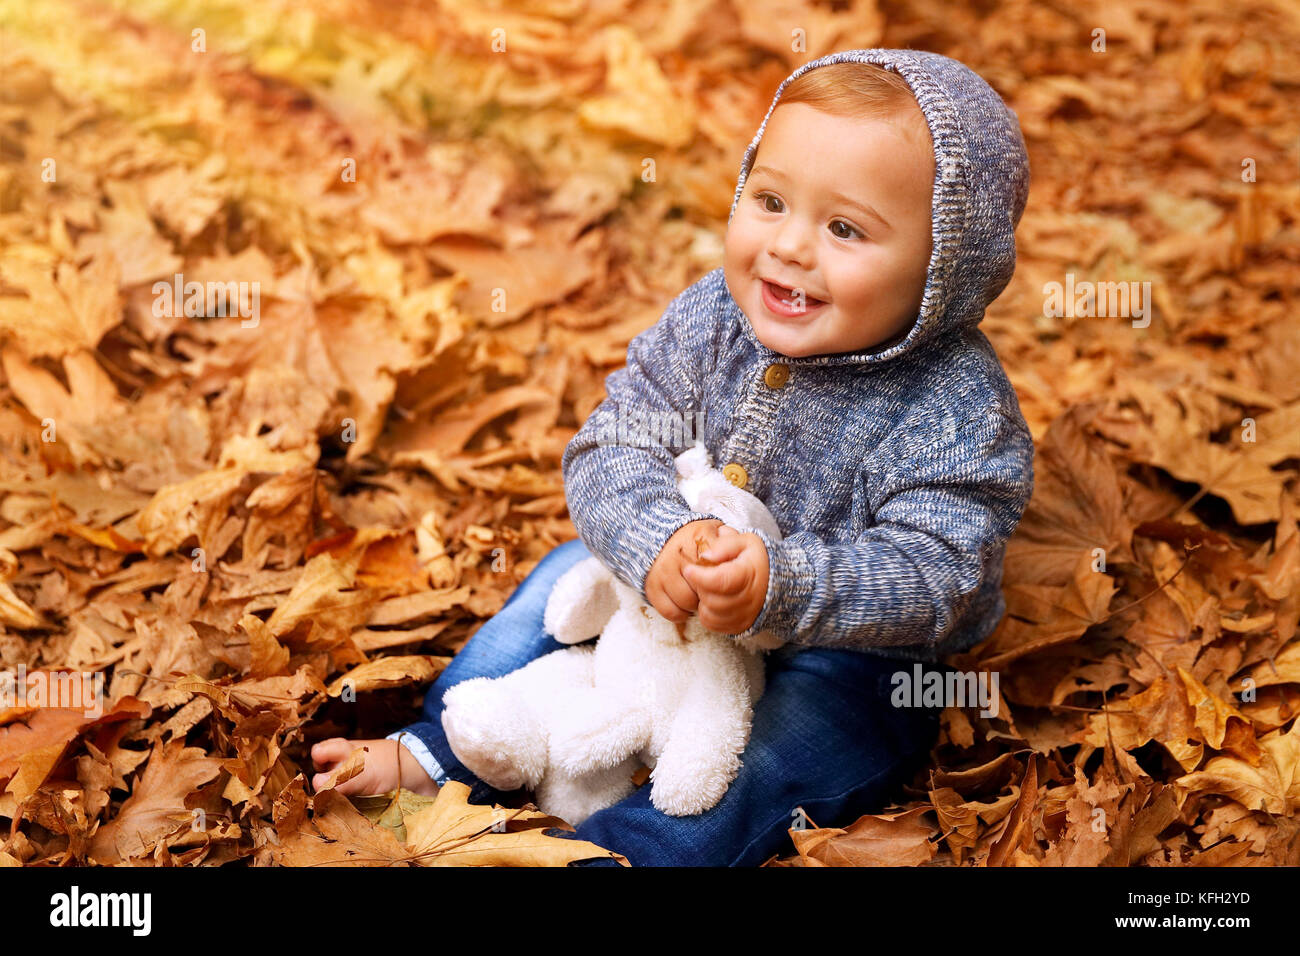 Süße kleine Baby Junge sitzt auf dem Boden mit trockenem Laub im Park bedeckt, wenig fröhliches Kind spielt mit Soft Toy im Herbst Garten Stockfoto